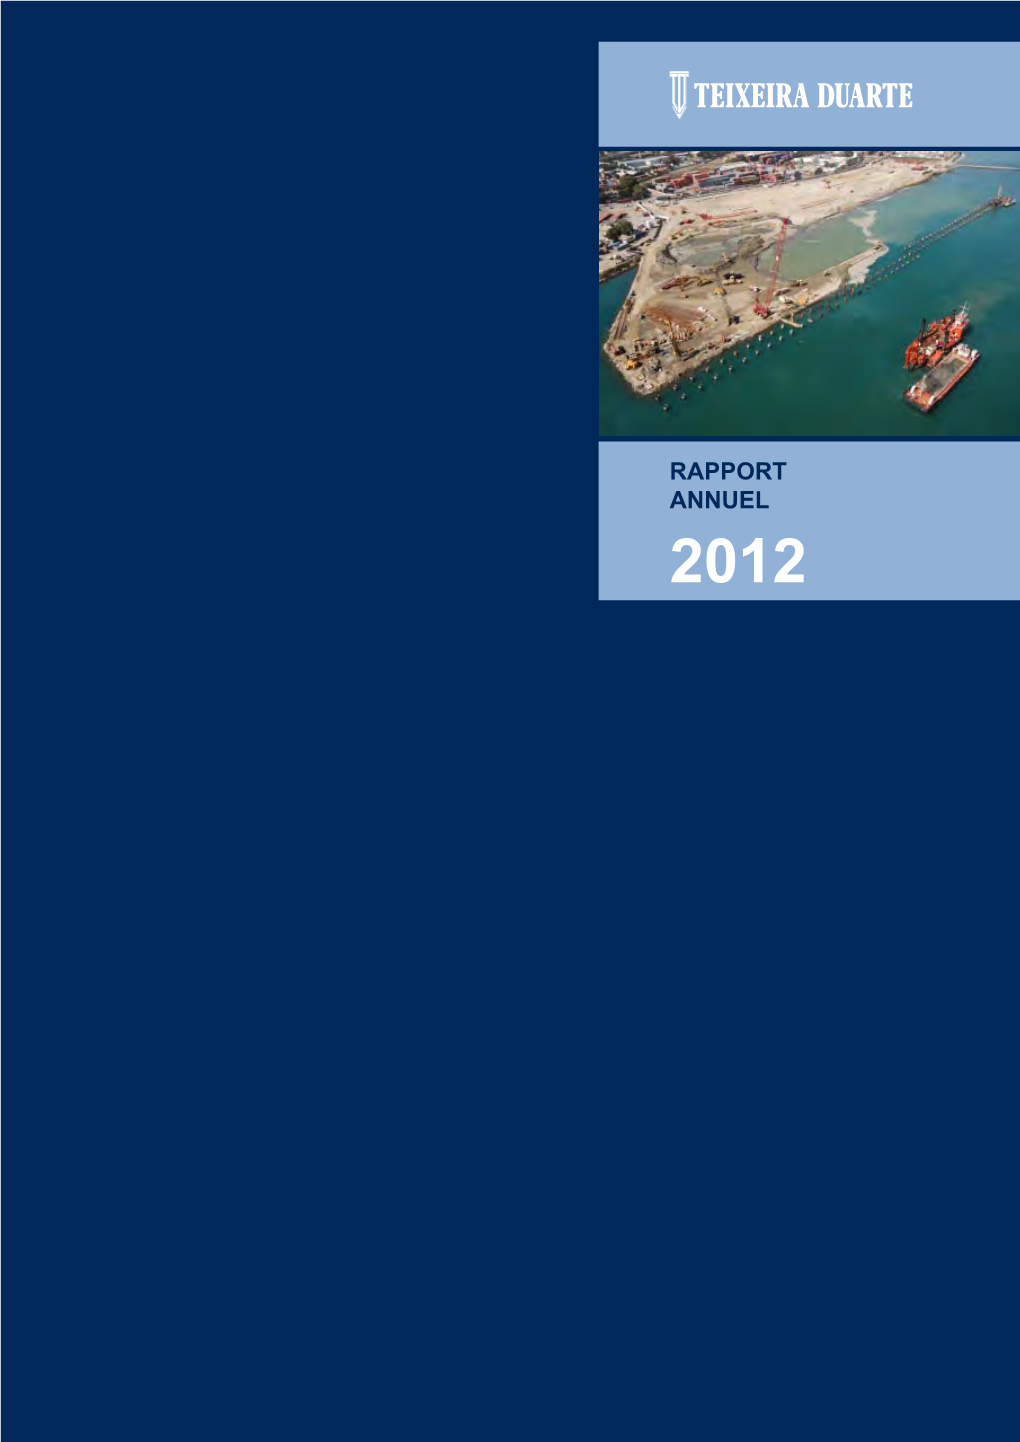 RAPPORT ANNUEL 2012 Couverture: Port De La Guaira | Venezuela Rapport Annuel 2012 Teixeira Duarte, S.A